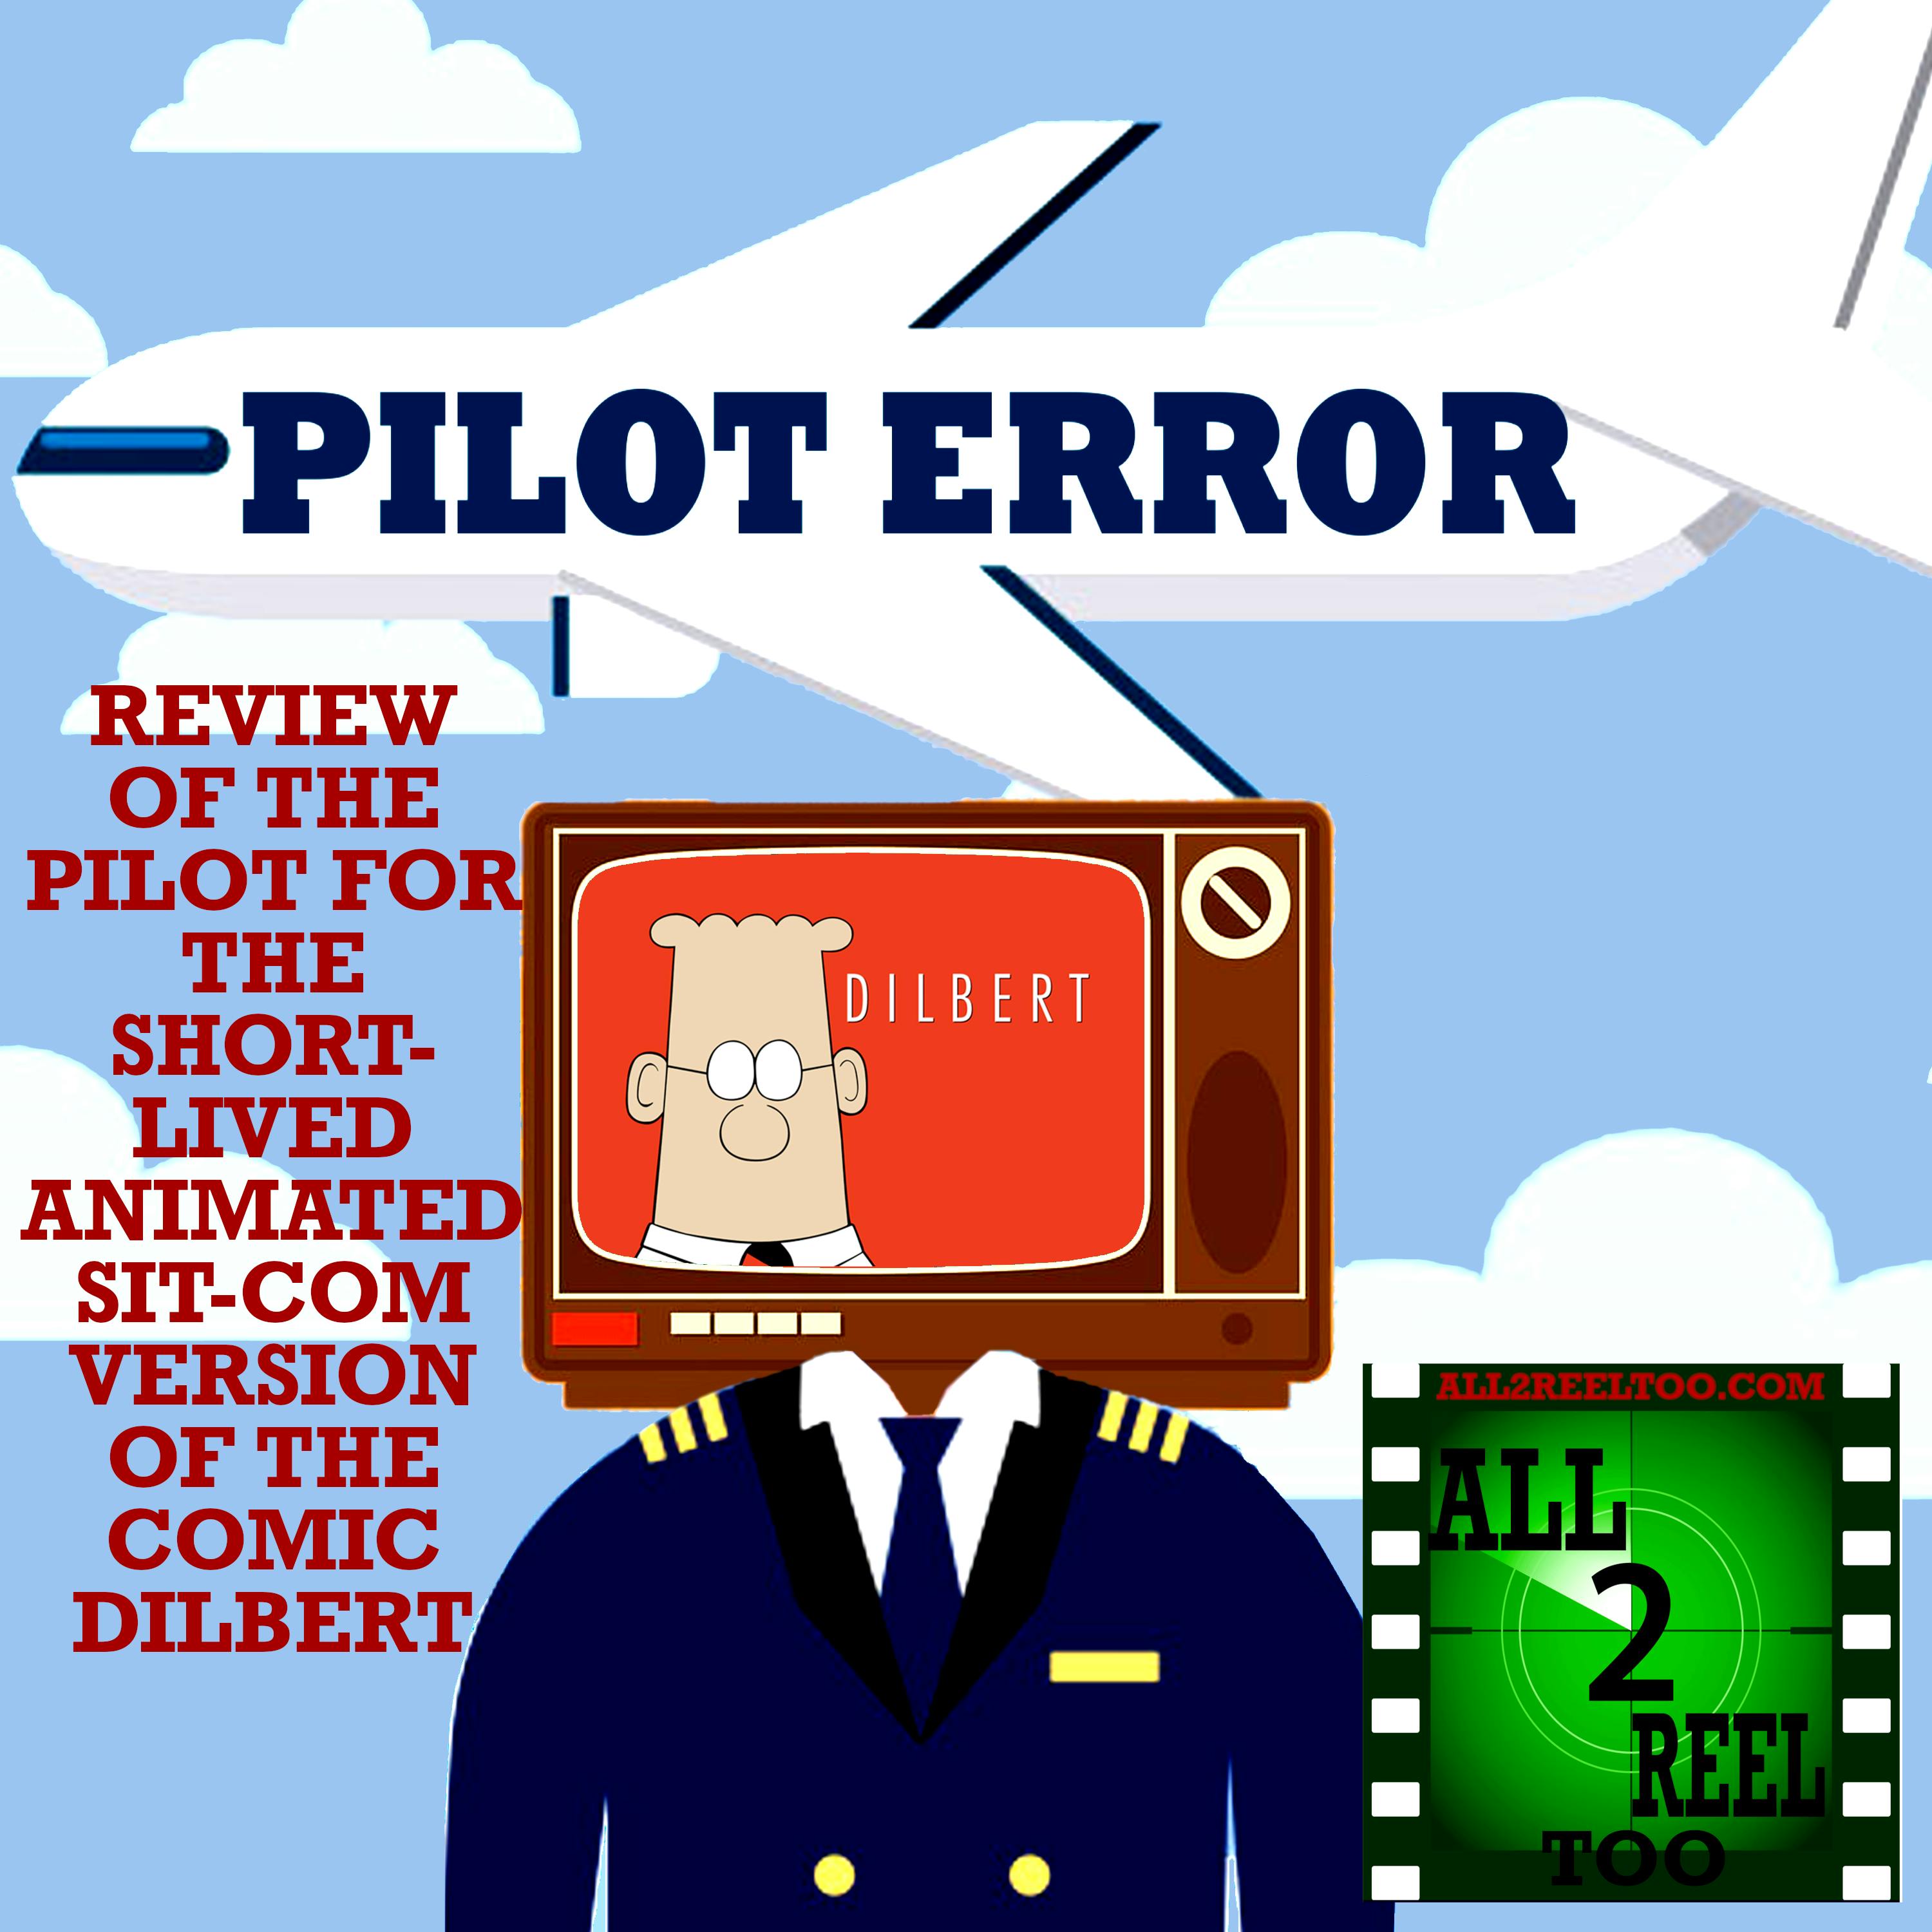 Dilbert (1999) - PILOT ERROR REVIEW